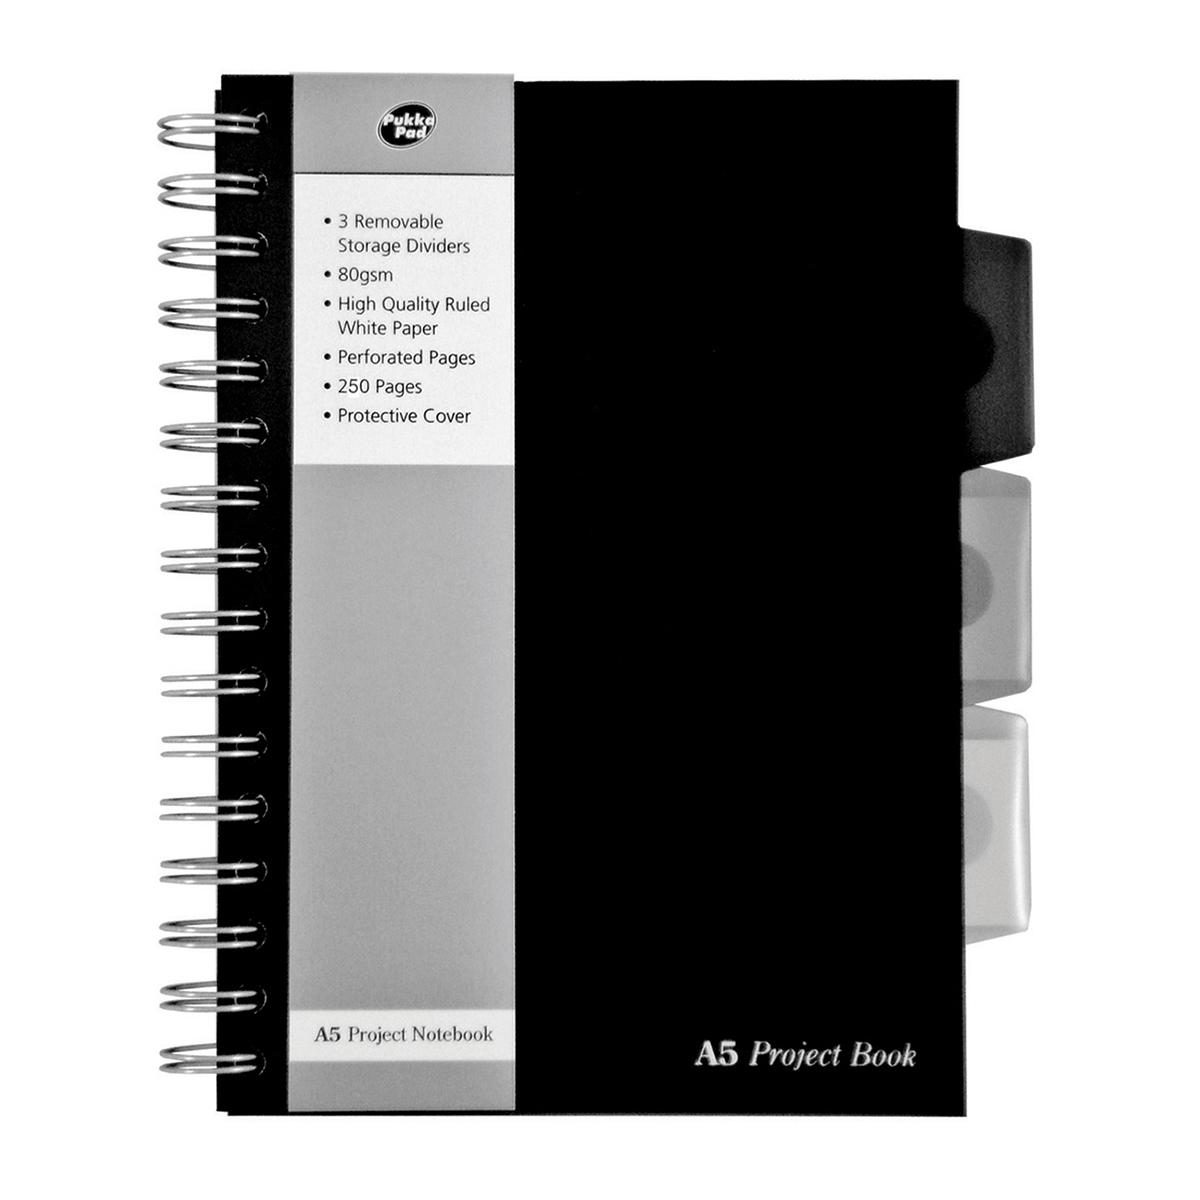 Caiet A5 cu spira si separatoare PukkaPads BPB, 250 file, matematica, coperta PP, negru